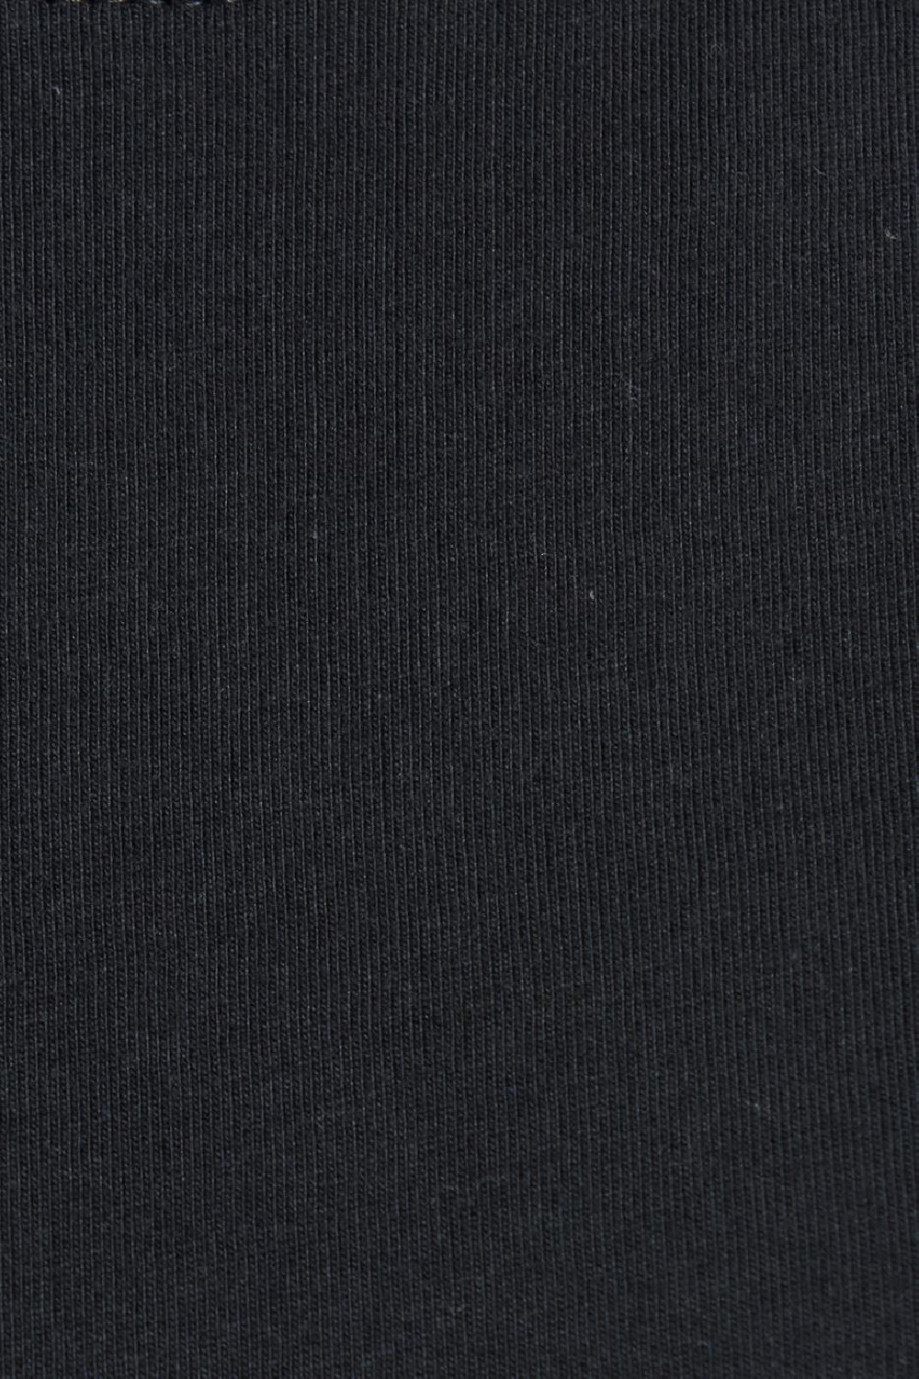 Camiseta en algodón unicolor con cuello redondo y manga corta